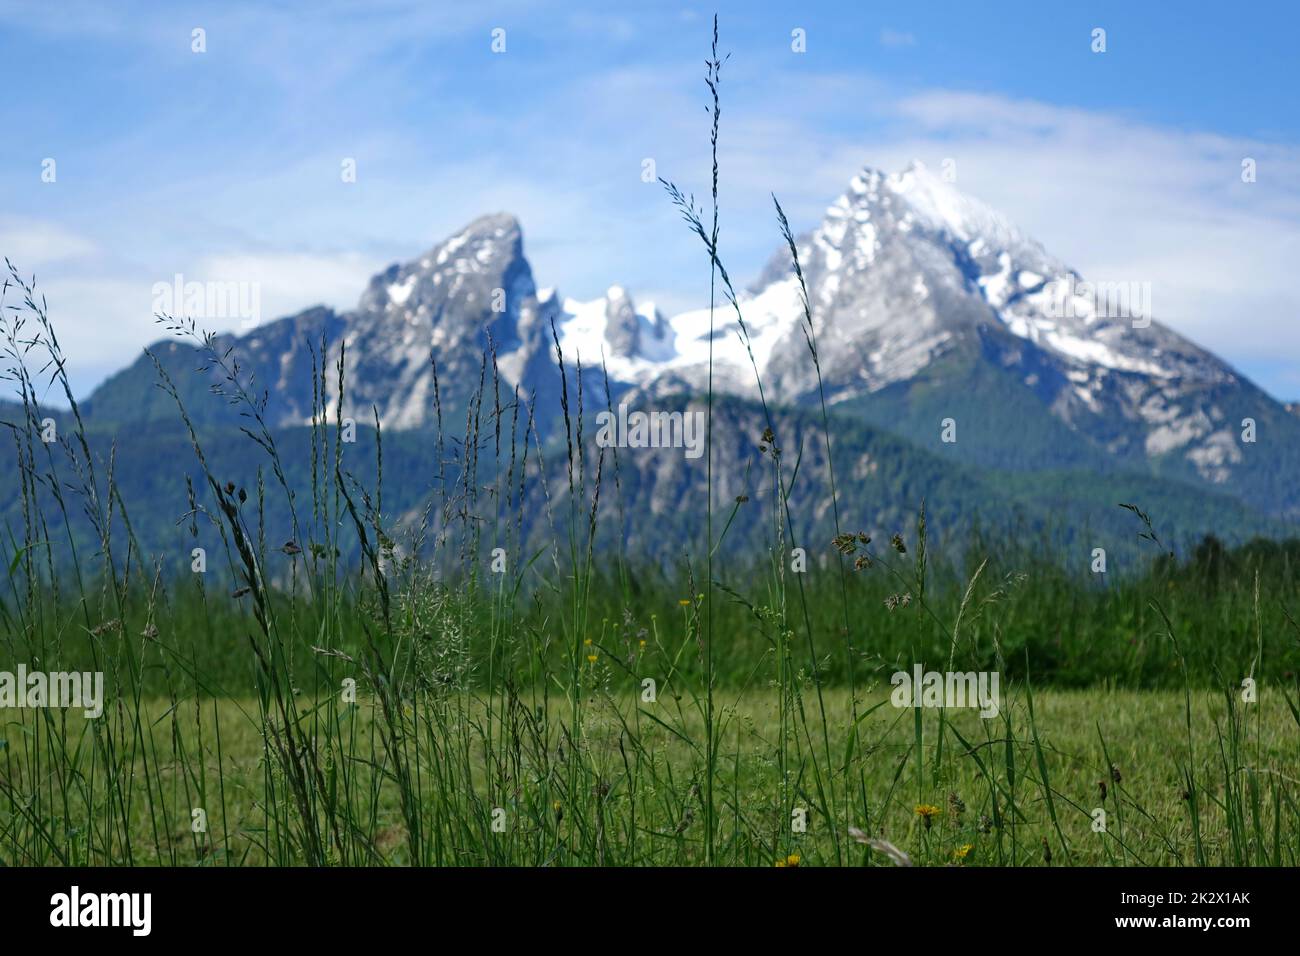 Germania, Baviera, Landkreis Berchtesgaden, Berchtesgadener Alpen, parco nazionale, Watzmann Massive Foto Stock